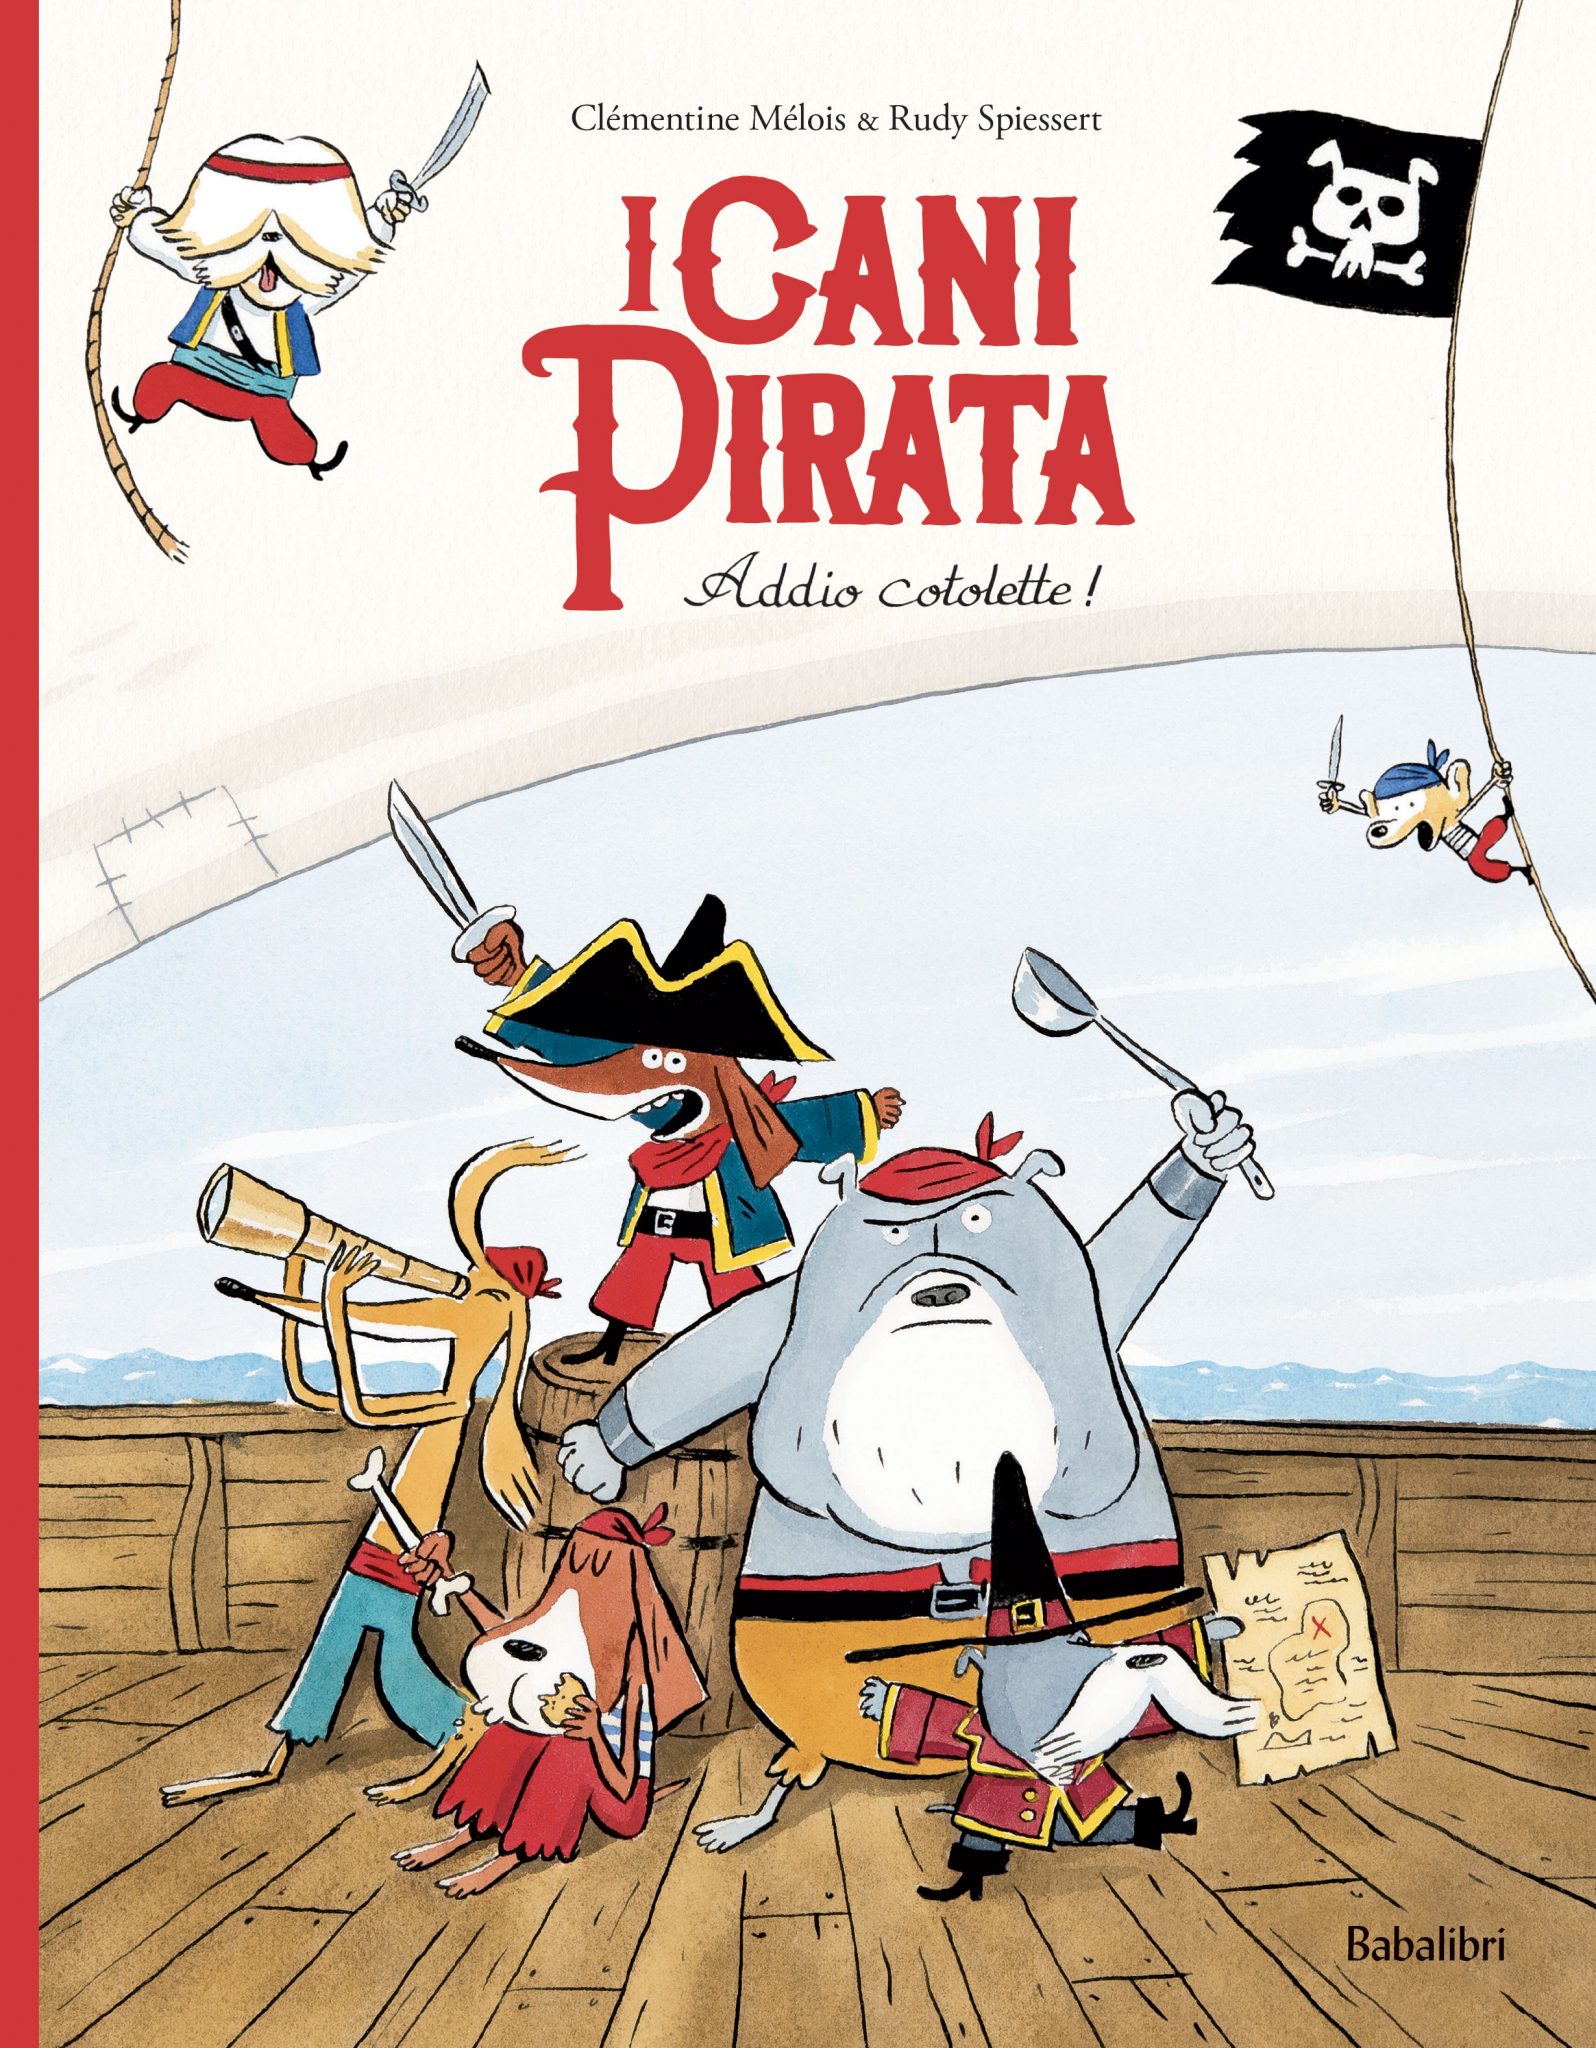 I-cani-pirata_cover